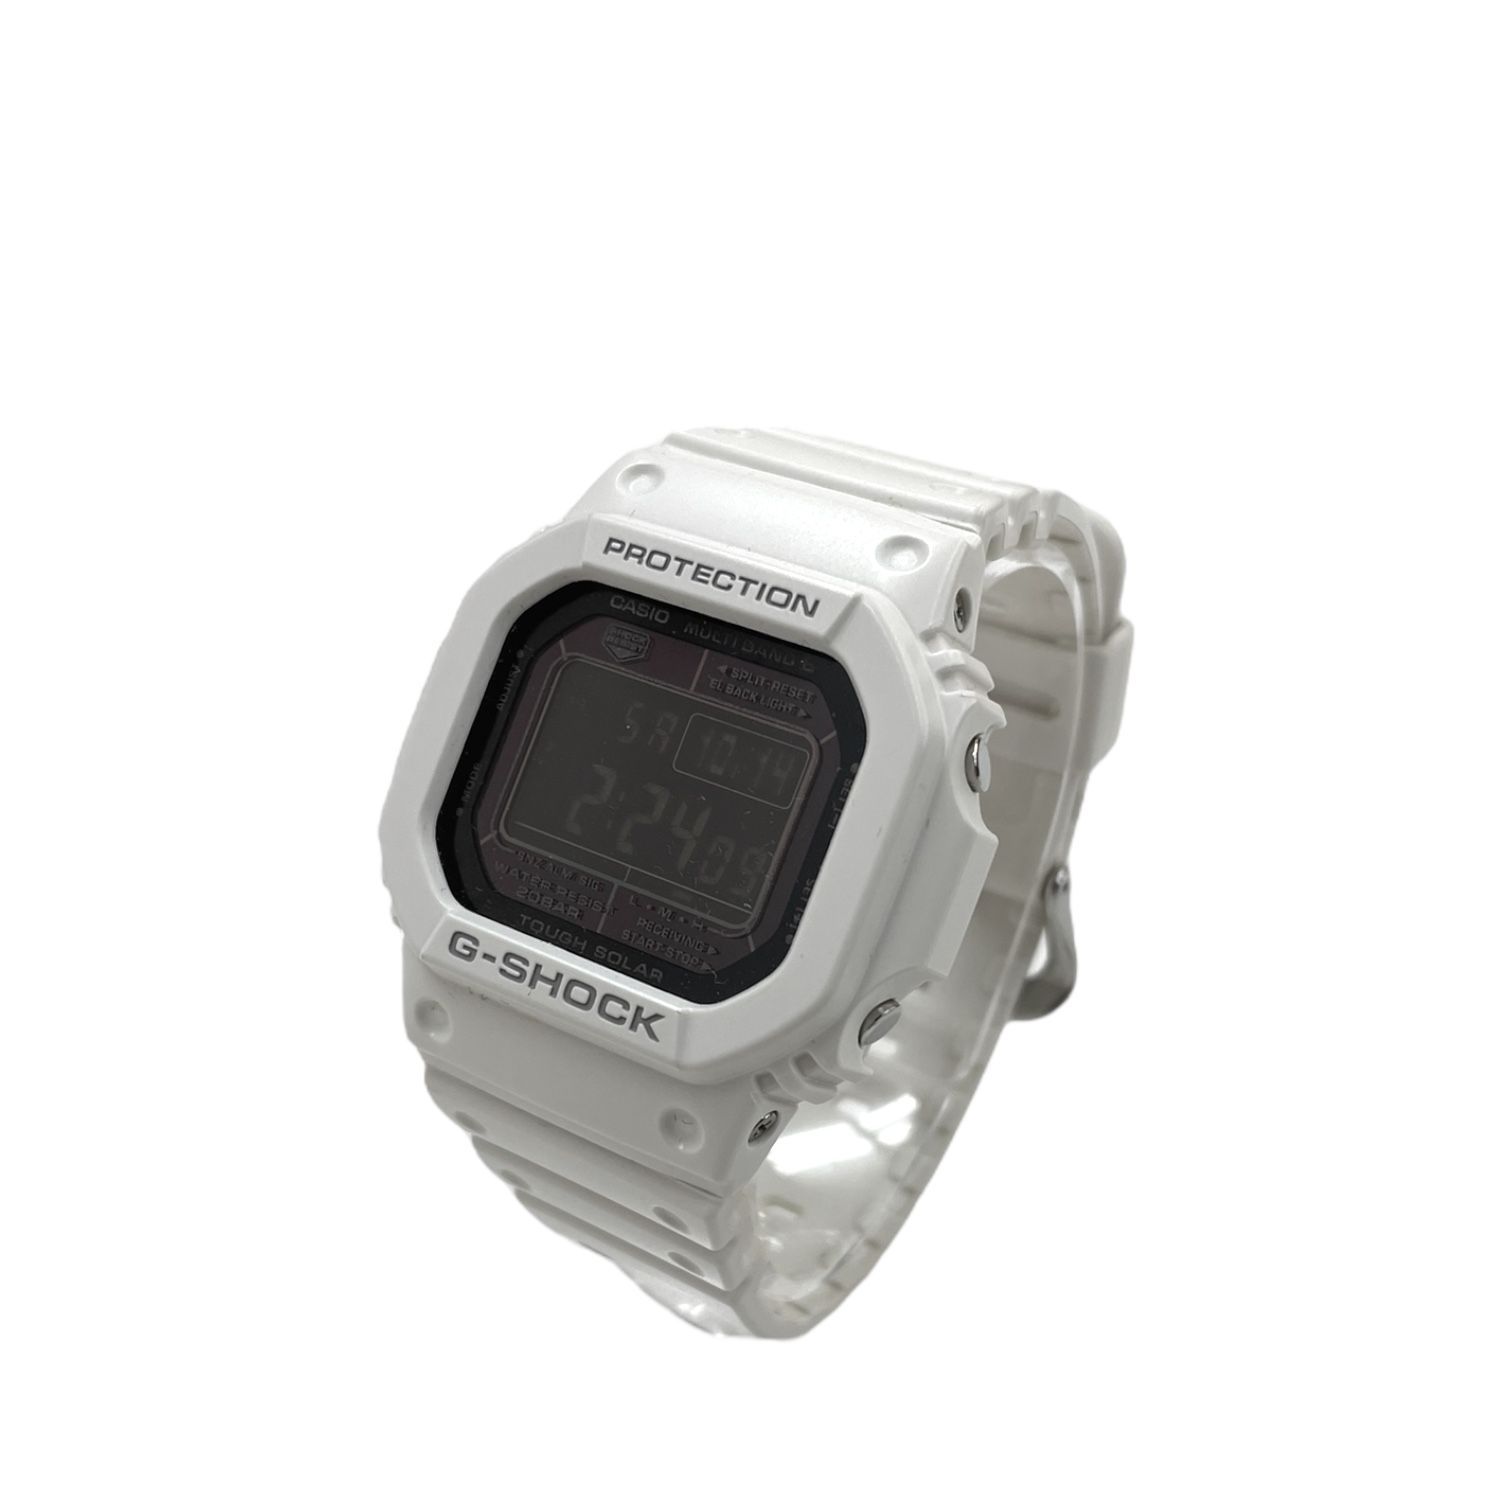 電波ソーラーホワイトCASIO G-SHOCK GW-M5610MD-7JF - 腕時計(デジタル)